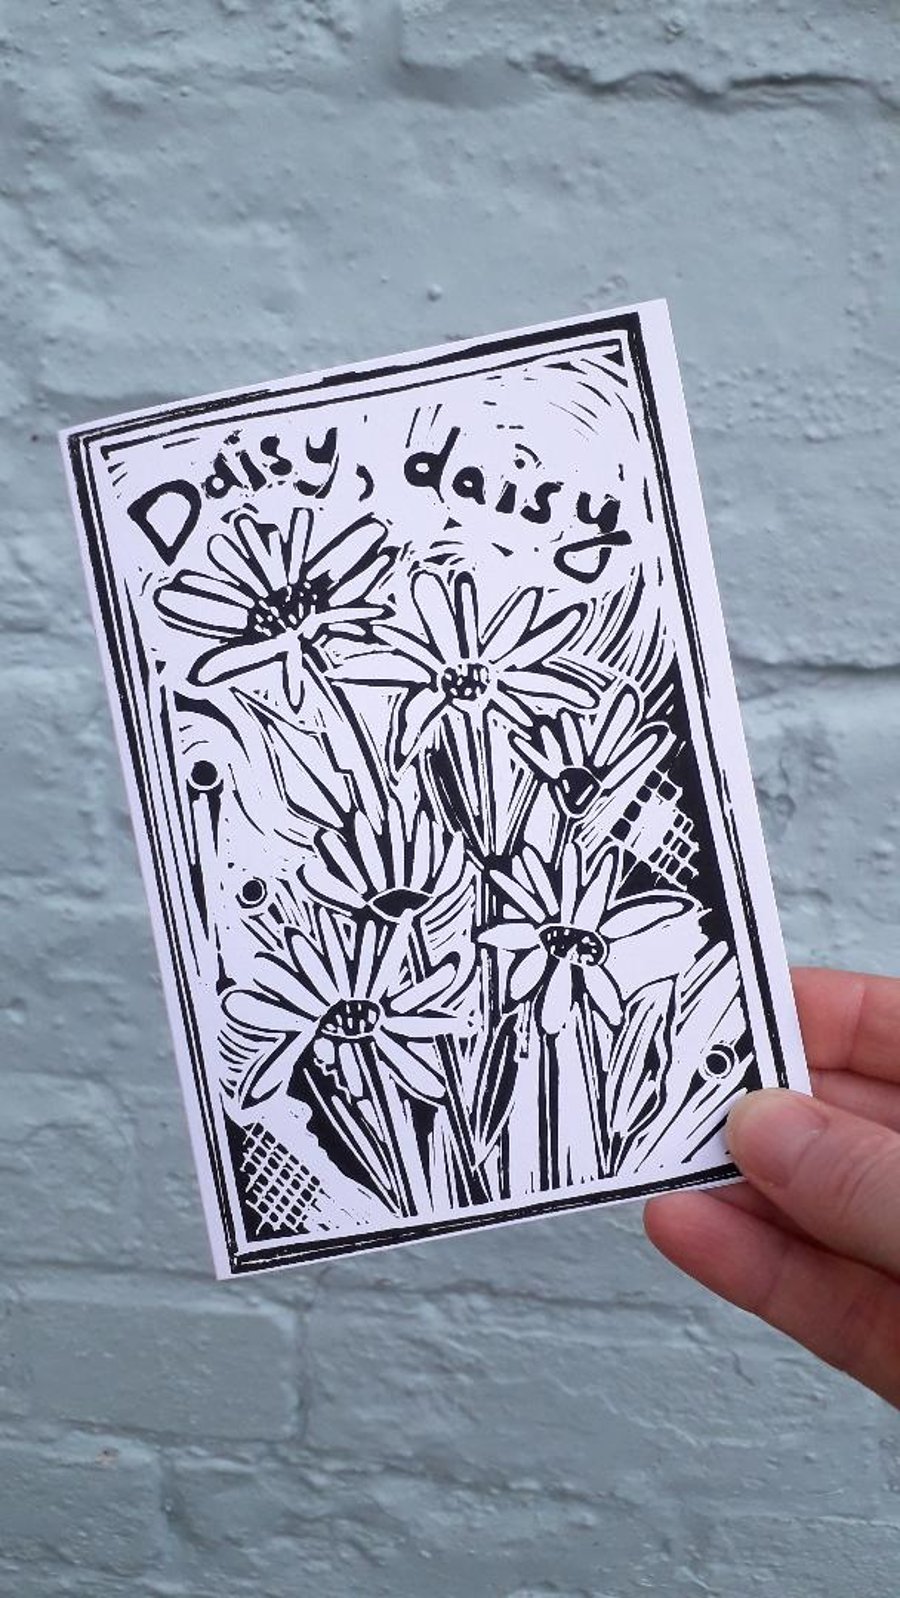 'Daisy Daisy' Greetings Card, Black Lino Print